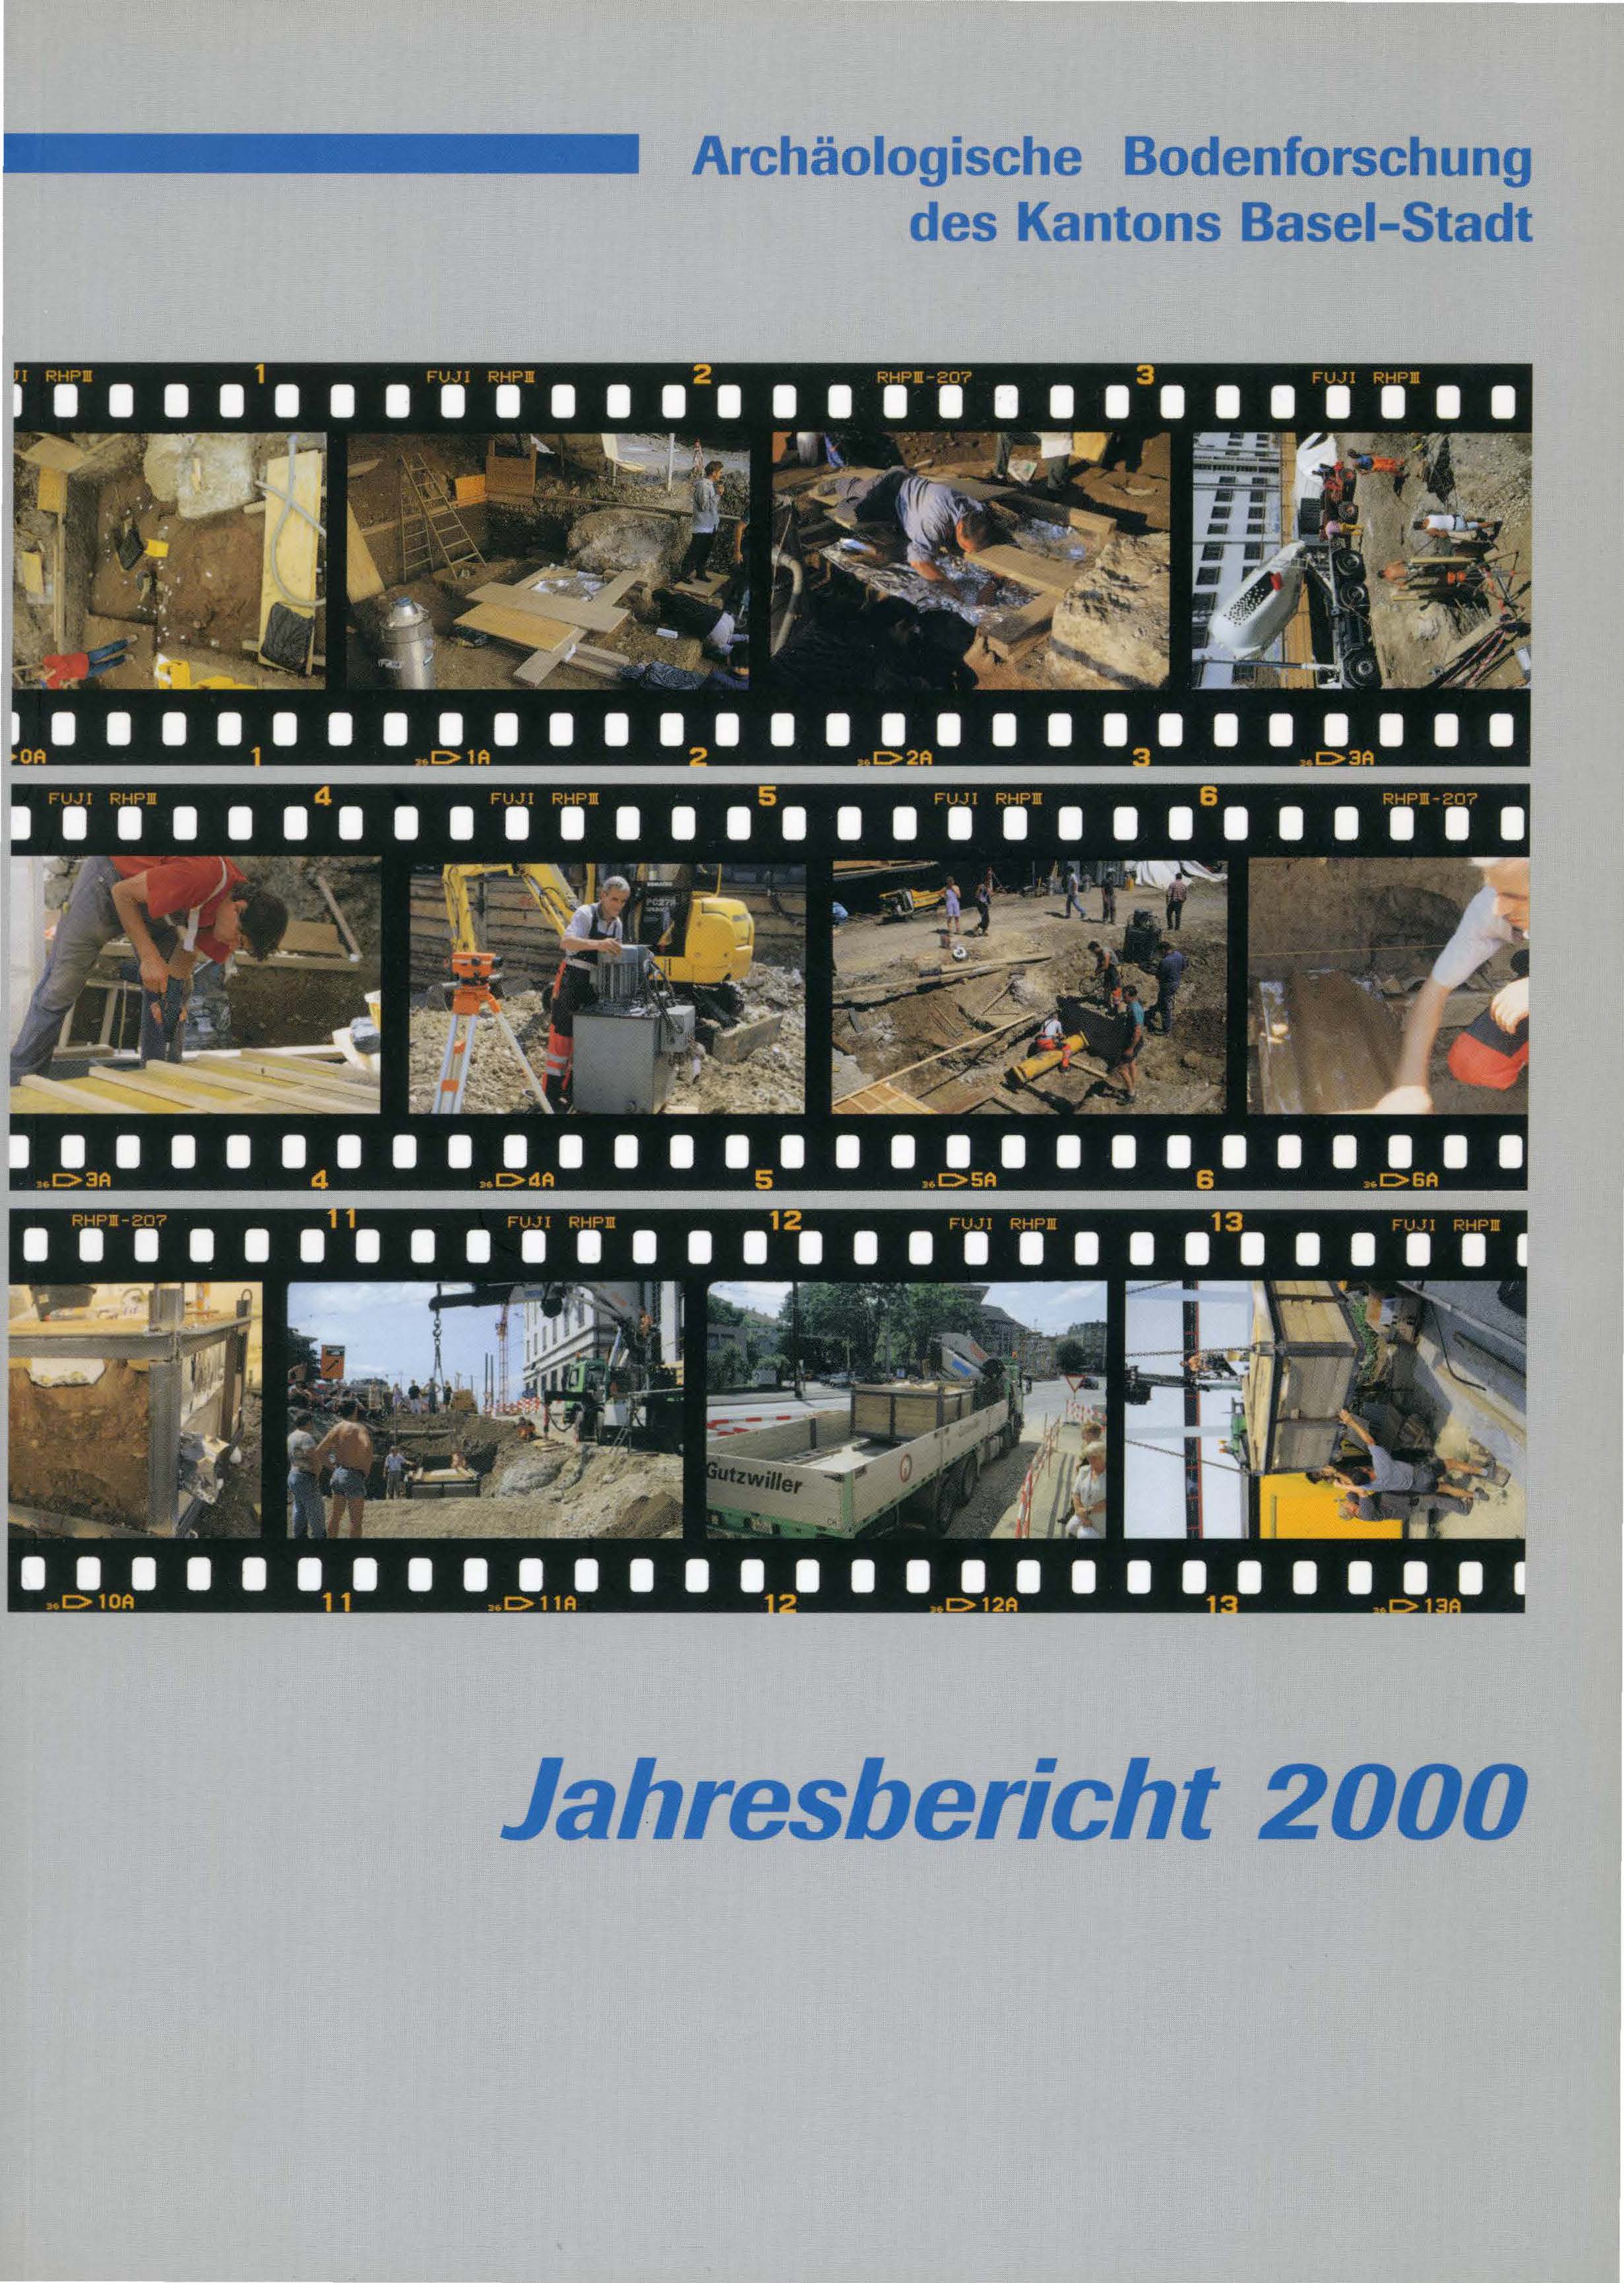 Vorderseite des Jahresberichts 2000